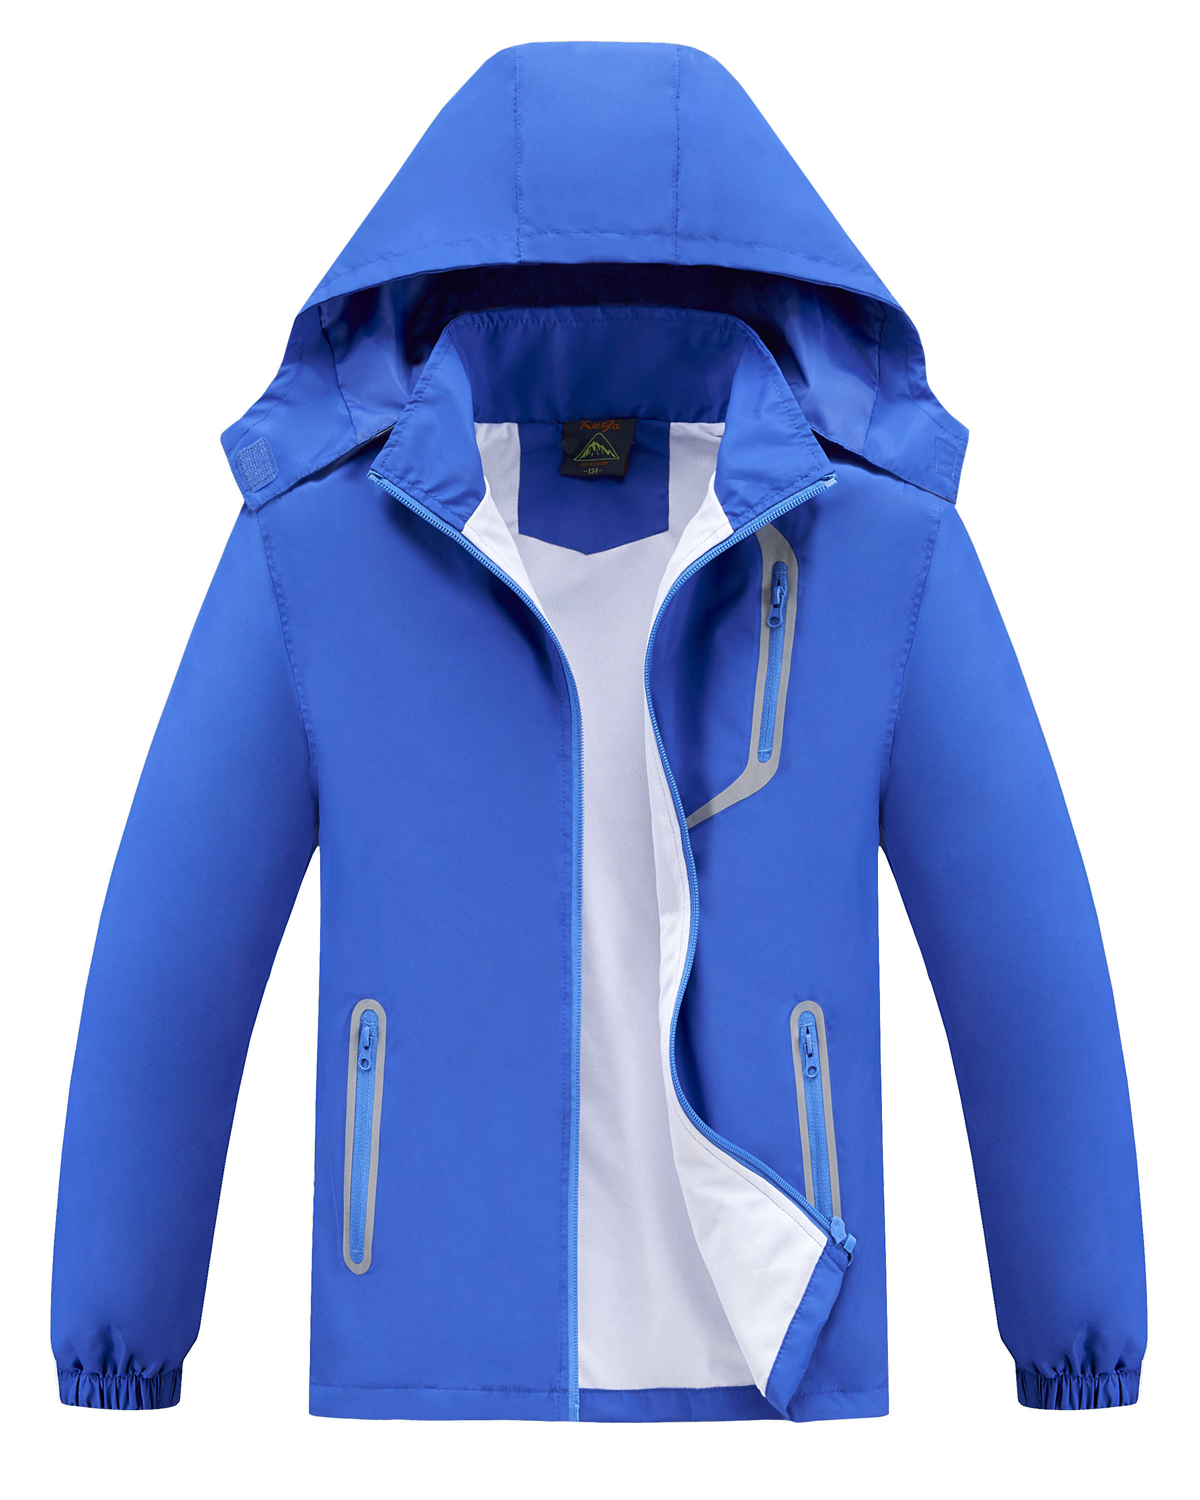 Chlapecká jarní, podzimní bunda - KUGO B2868, modrá Barva: Modrá, Velikost: 104